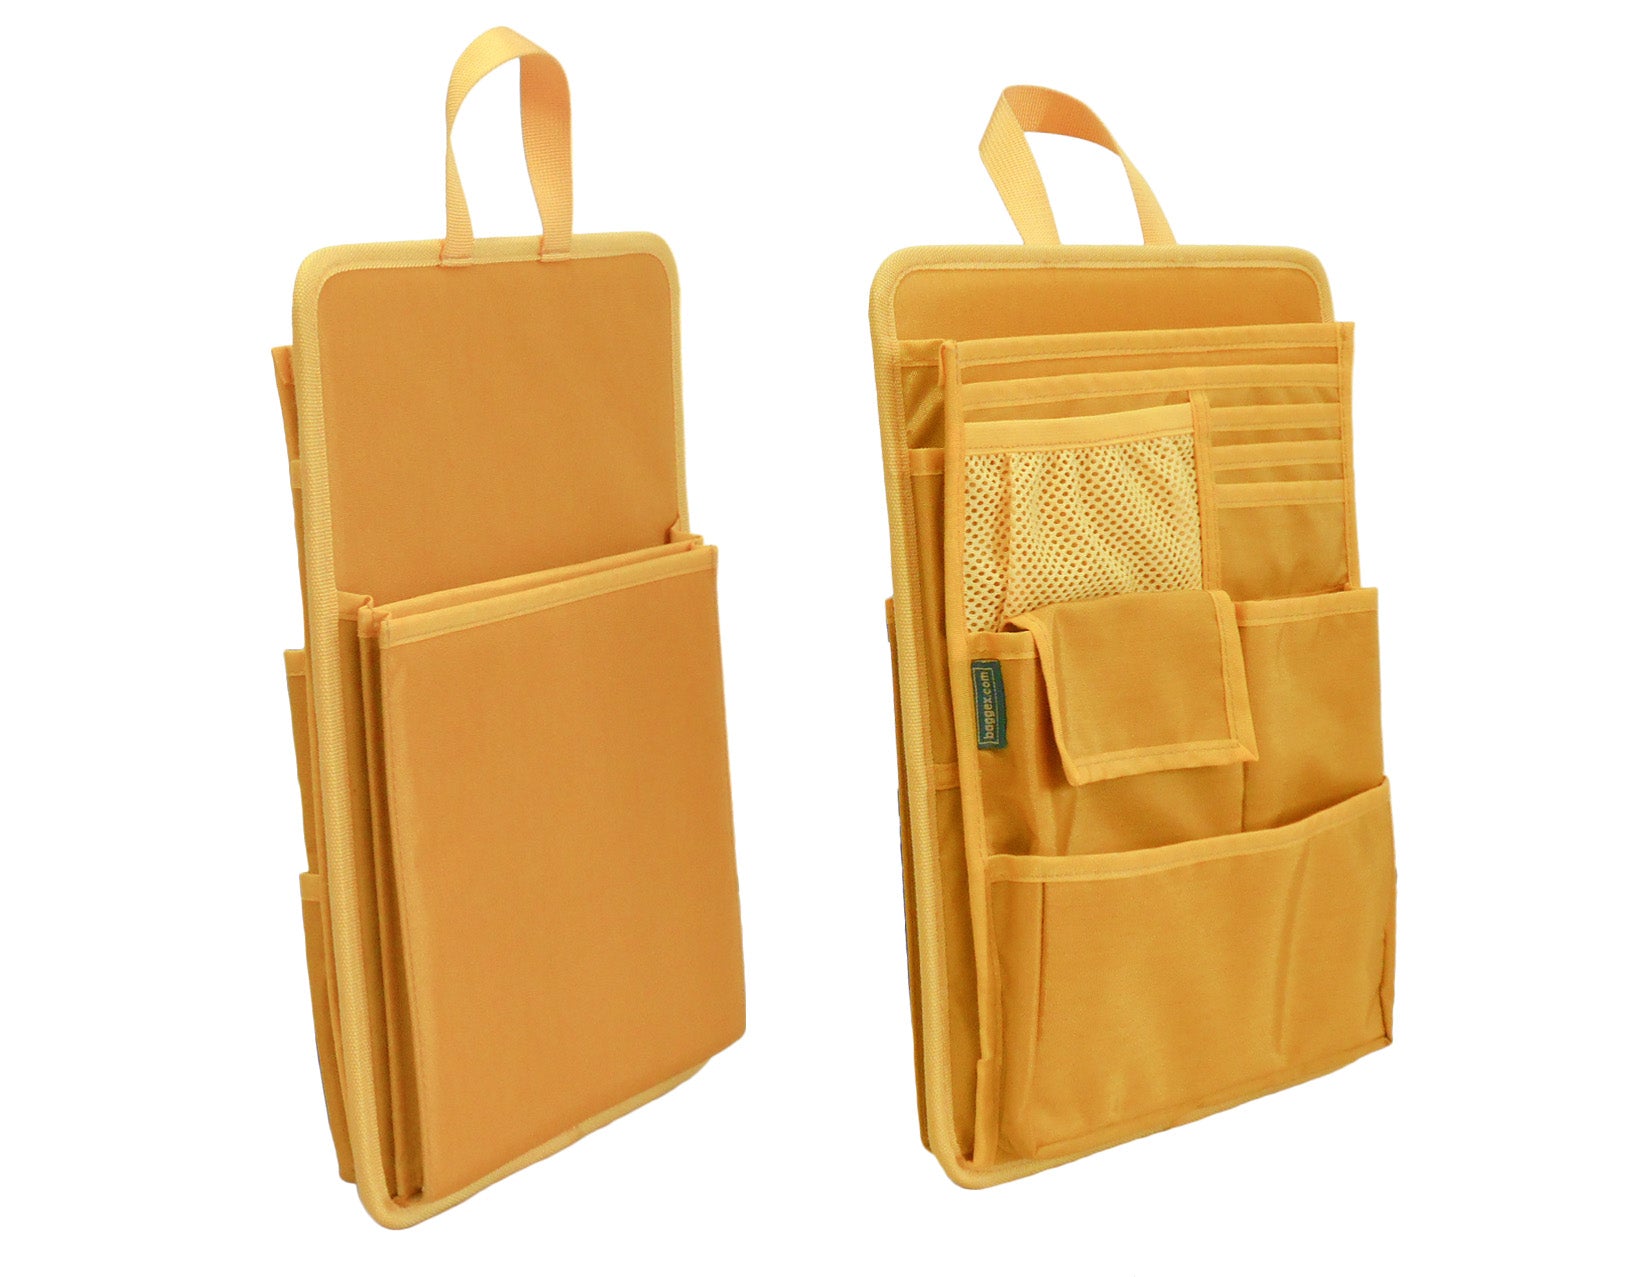 in Backpack Organizer Insert,nylon Organizer Insert for Backpack Rucksack Bag